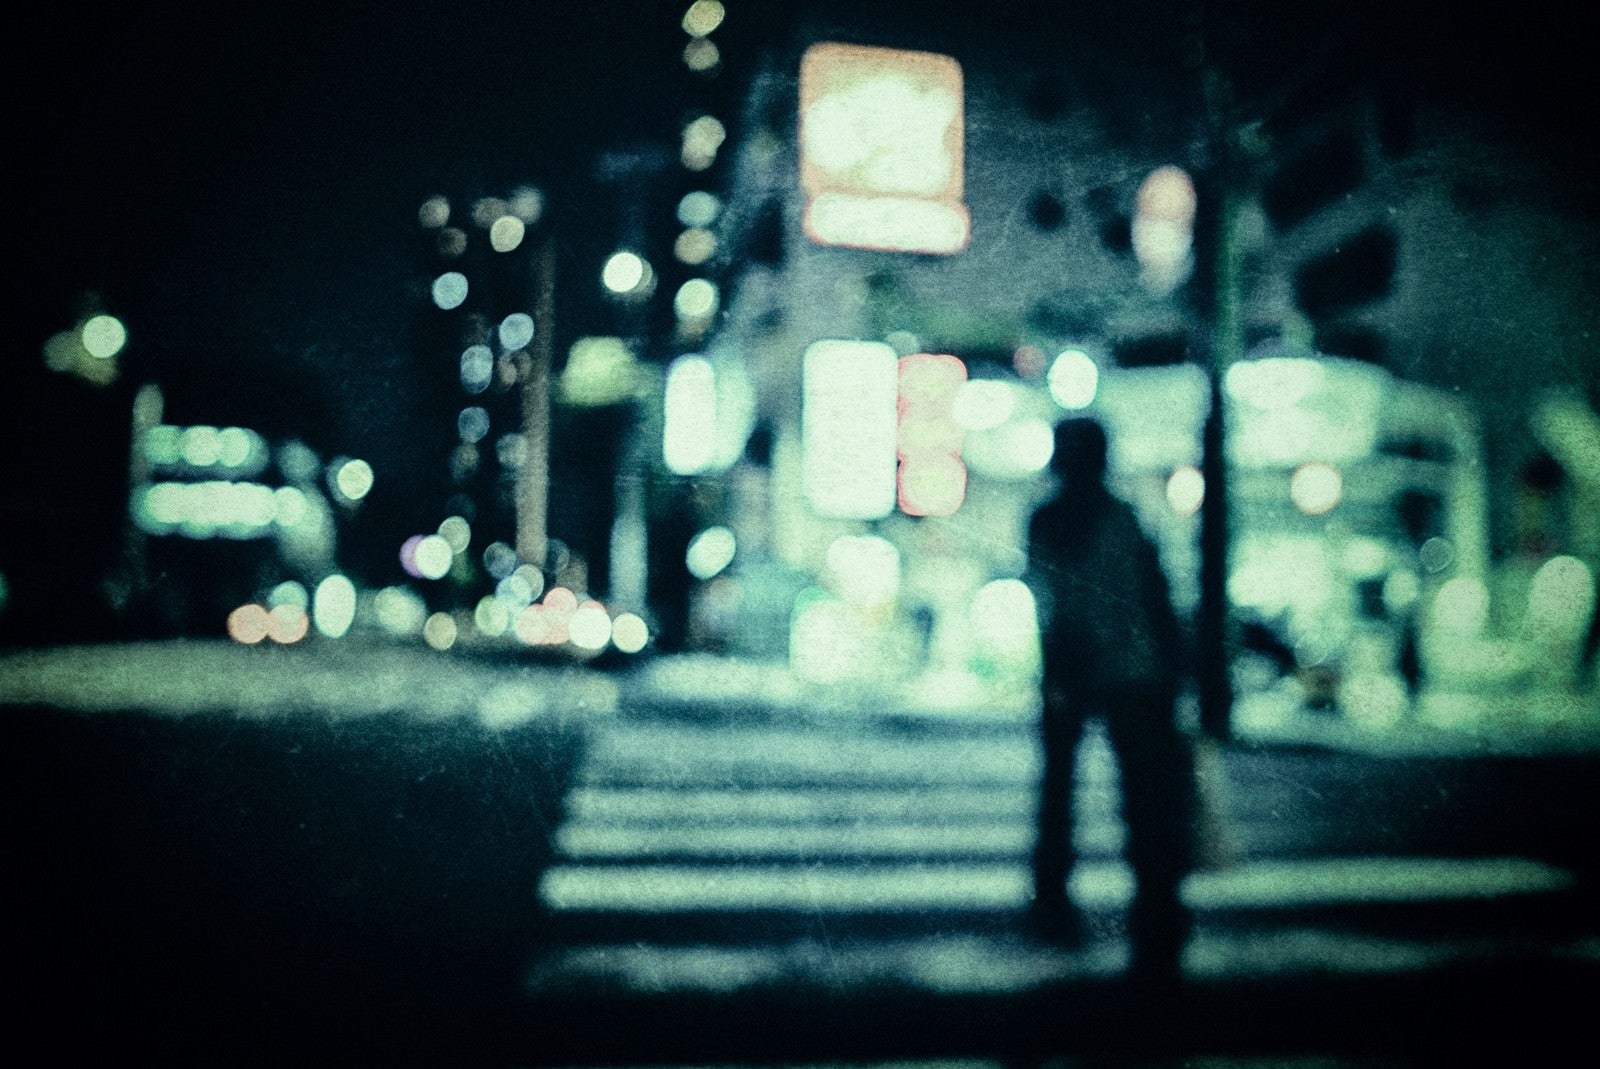 「横断歩道を渡る人影」の写真